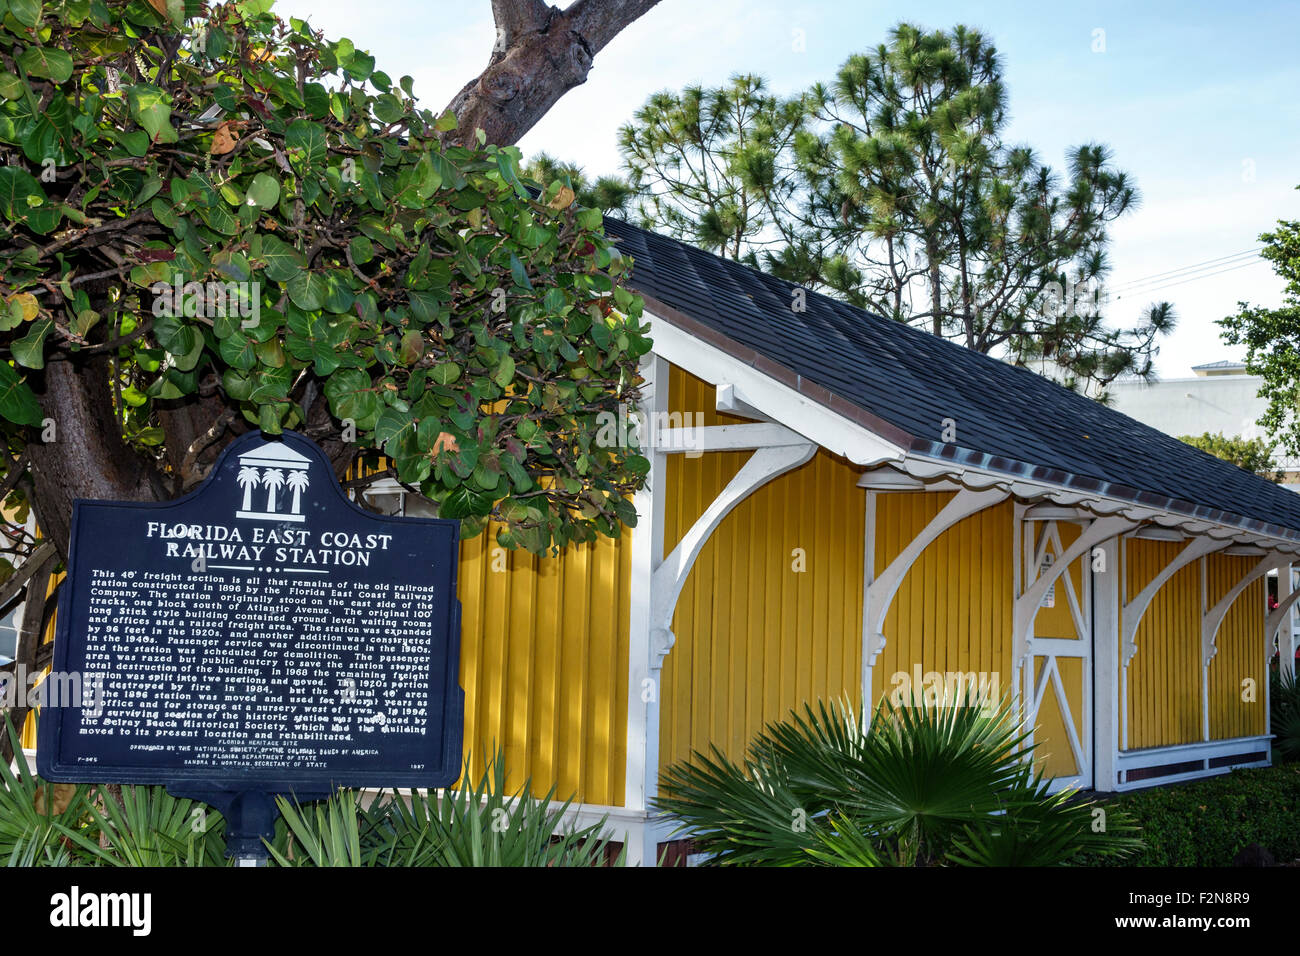 Delray Beach Florida, treno, deposito, stazione ferroviaria East Coast, ristrutturato, restaurato, storico marcatore, segno, FL150414055 Foto Stock